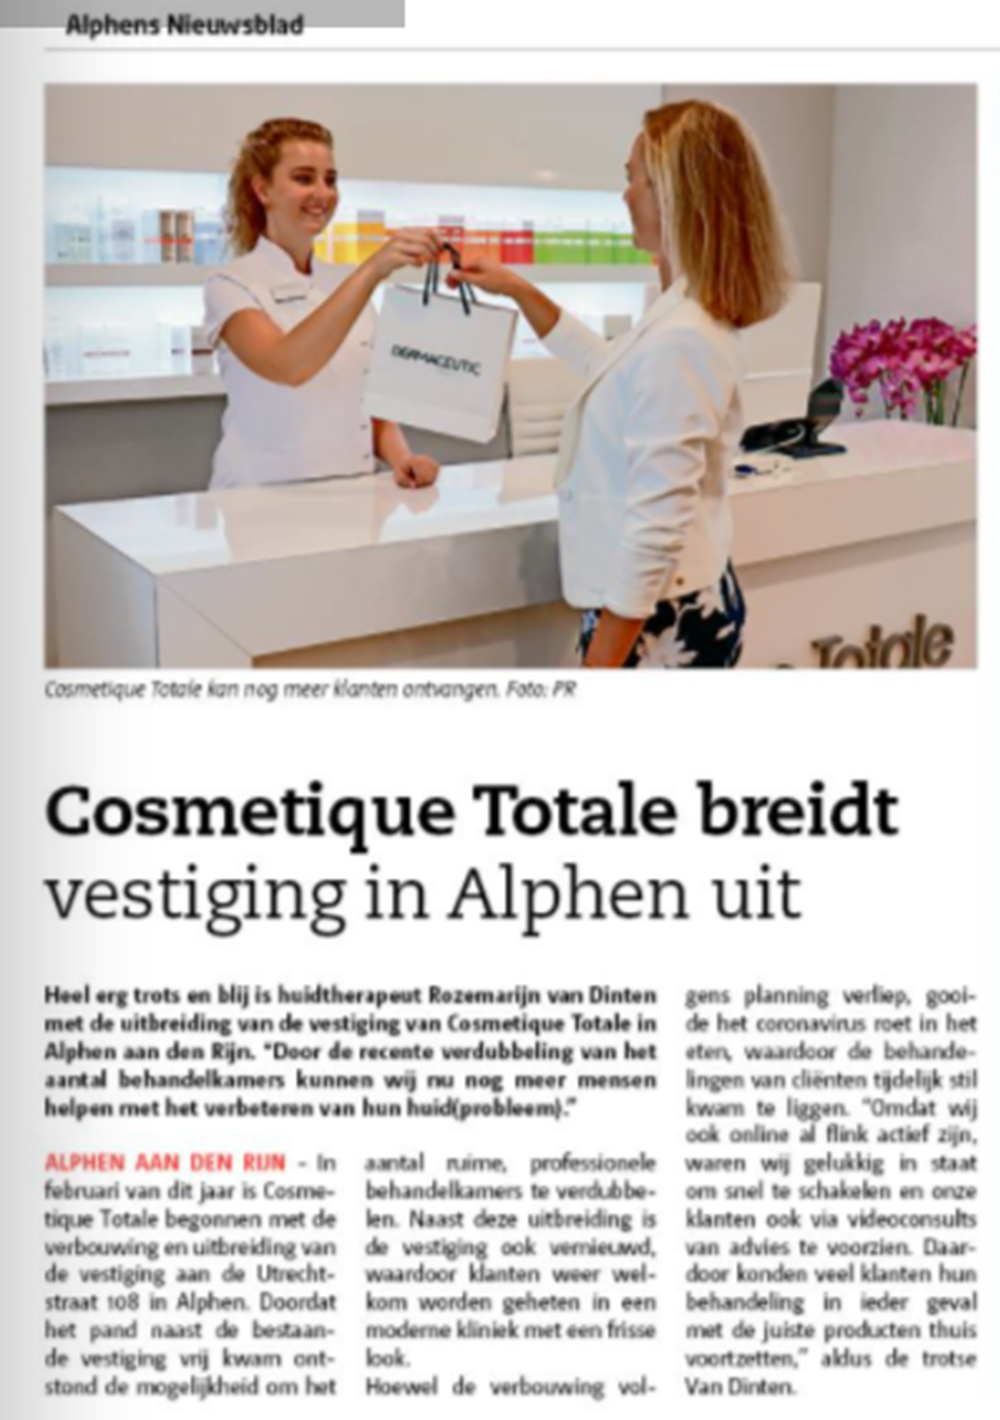 Alphens Nieuwsblad Cosmetique Totale